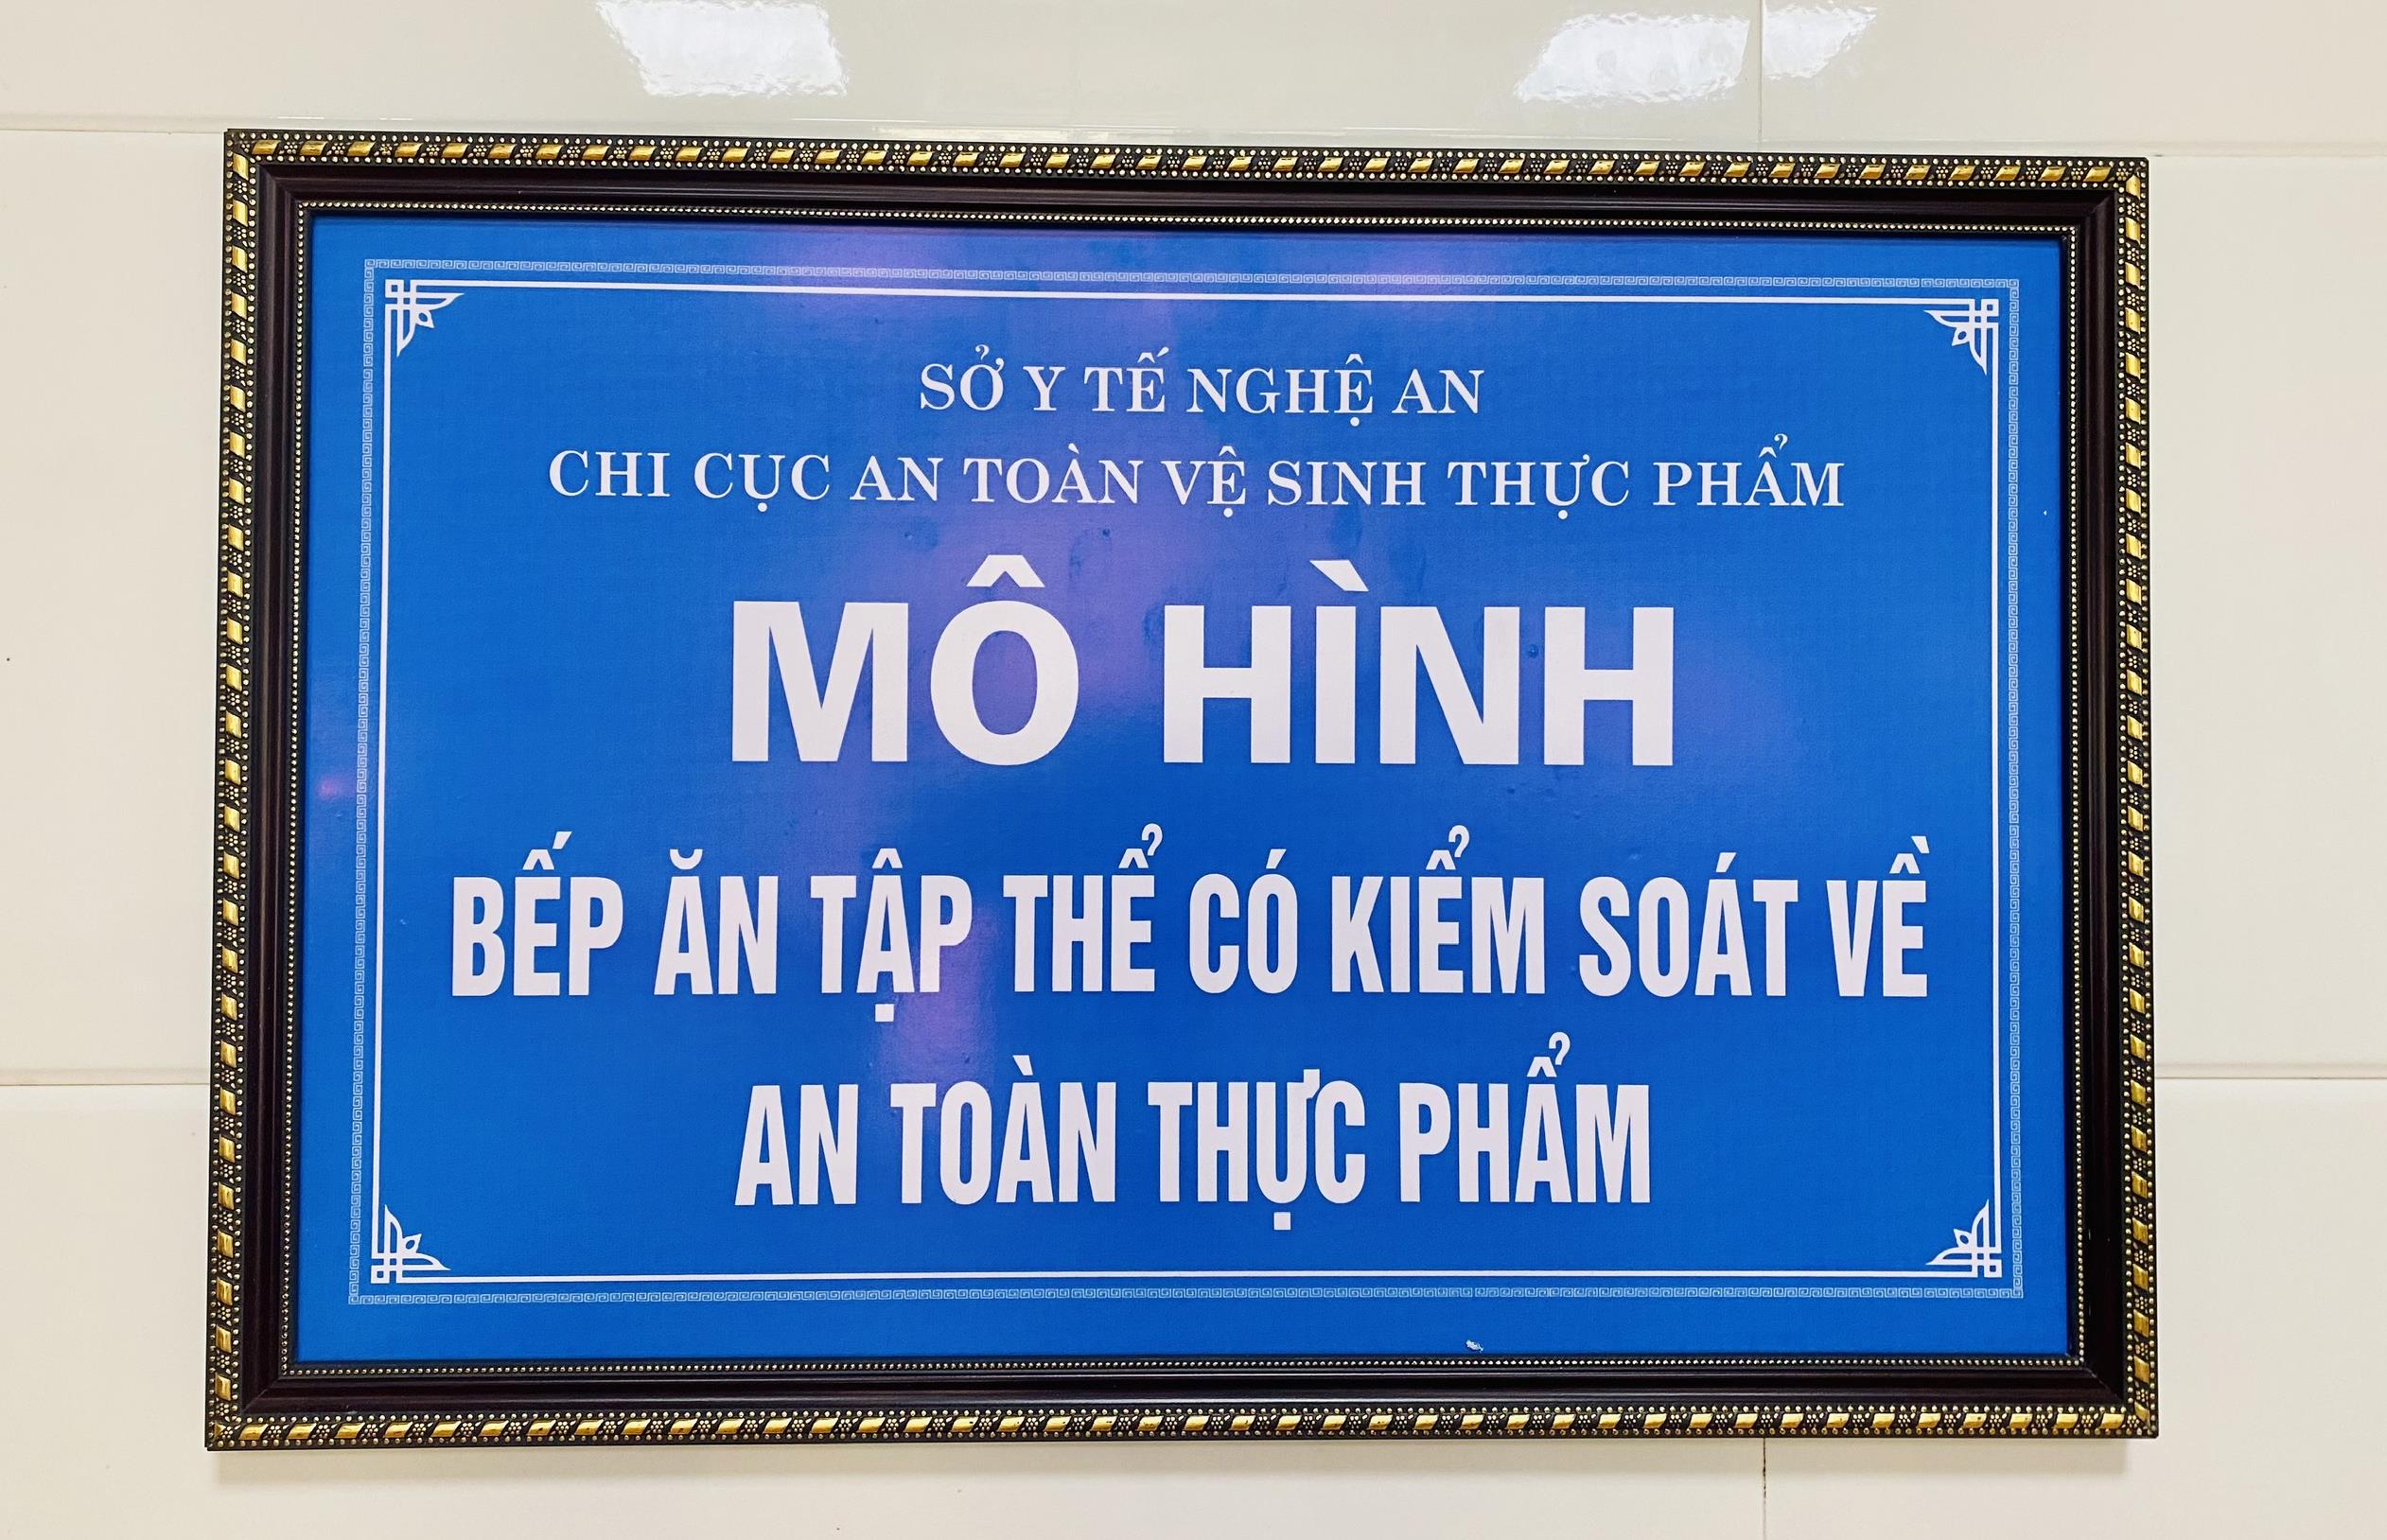 Bếp ăn BVCTCHNA được công nhận là mô hình bếp ăn tập thể có kiểm soát về ATTP trên địa bàn tỉnh Nghệ An